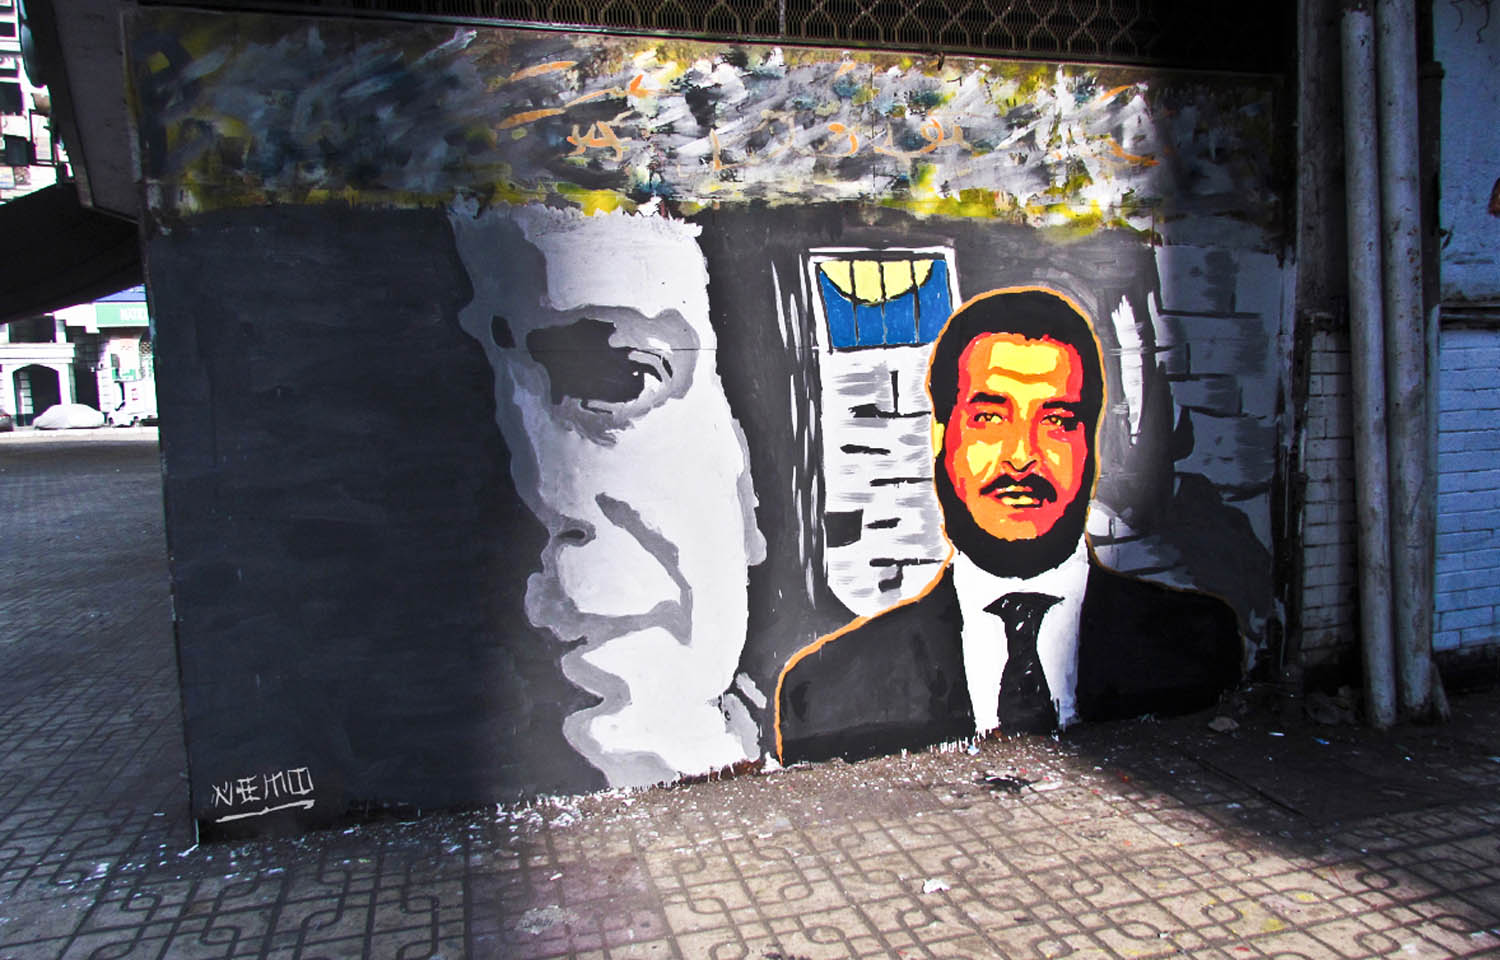 شخصيات من فيلم "طيور الظلام"/لوحة حائطية بريشة الفنان نيمو في القاهرة